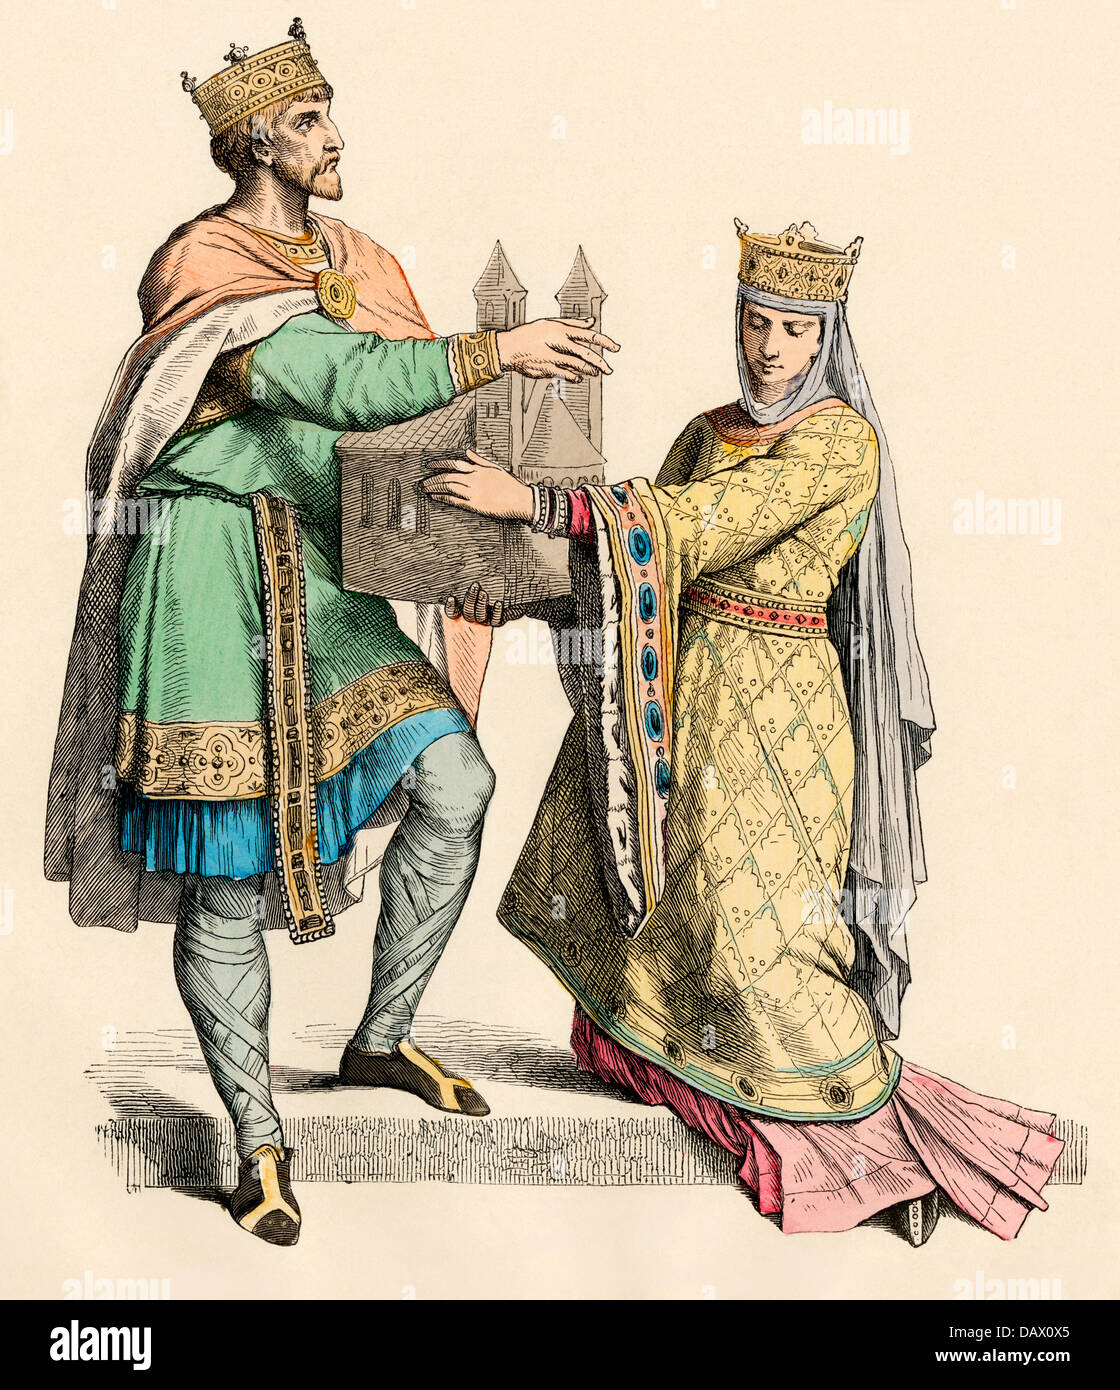 Roi de France et de la reine, probablement Louis VII et Aliénor d'Aquitaine, 1100. Impression couleur à la main Banque D'Images